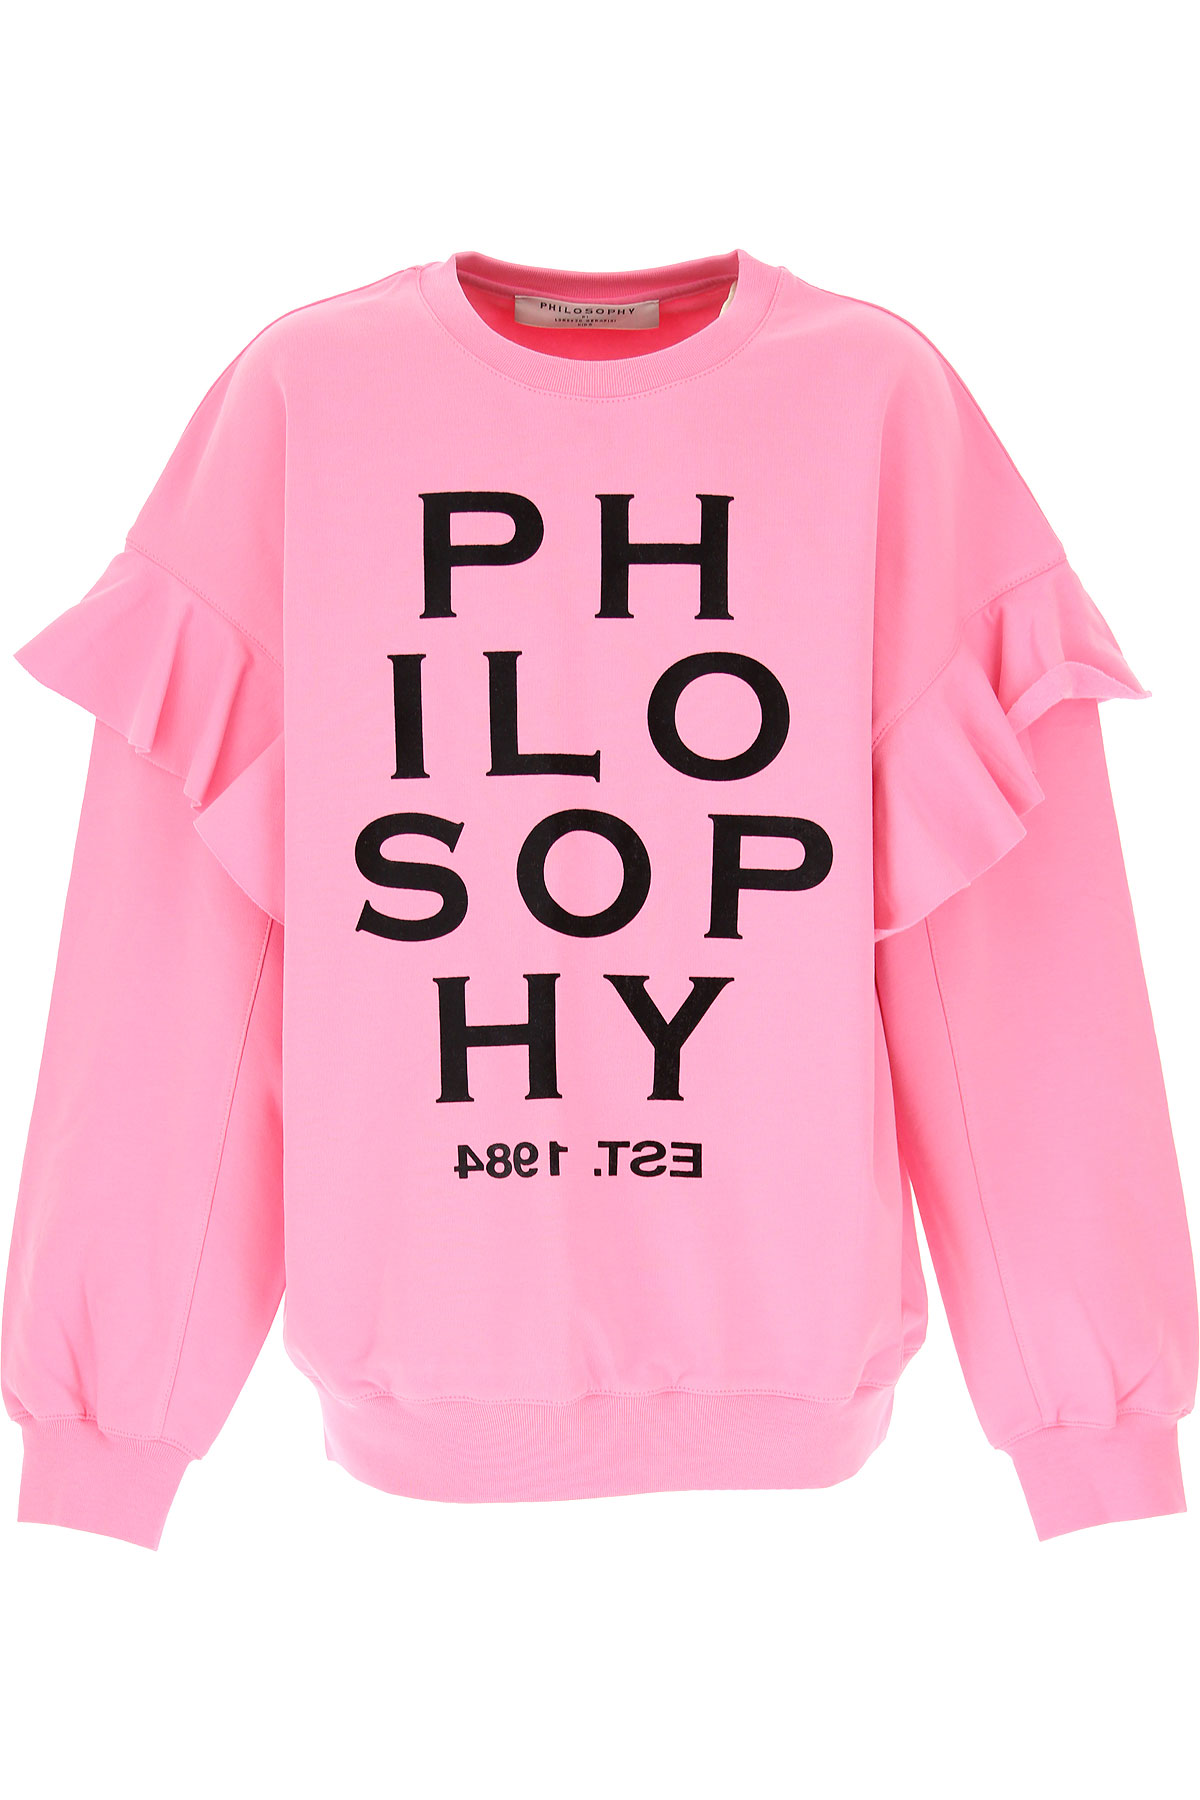 Philosophy di Lorenzo serafini Kinder Sweatshirt & Kapuzenpullover für Mädchen Günstig im Sale, Pink, Baumwolle, 2017, L M S XL XS XXS